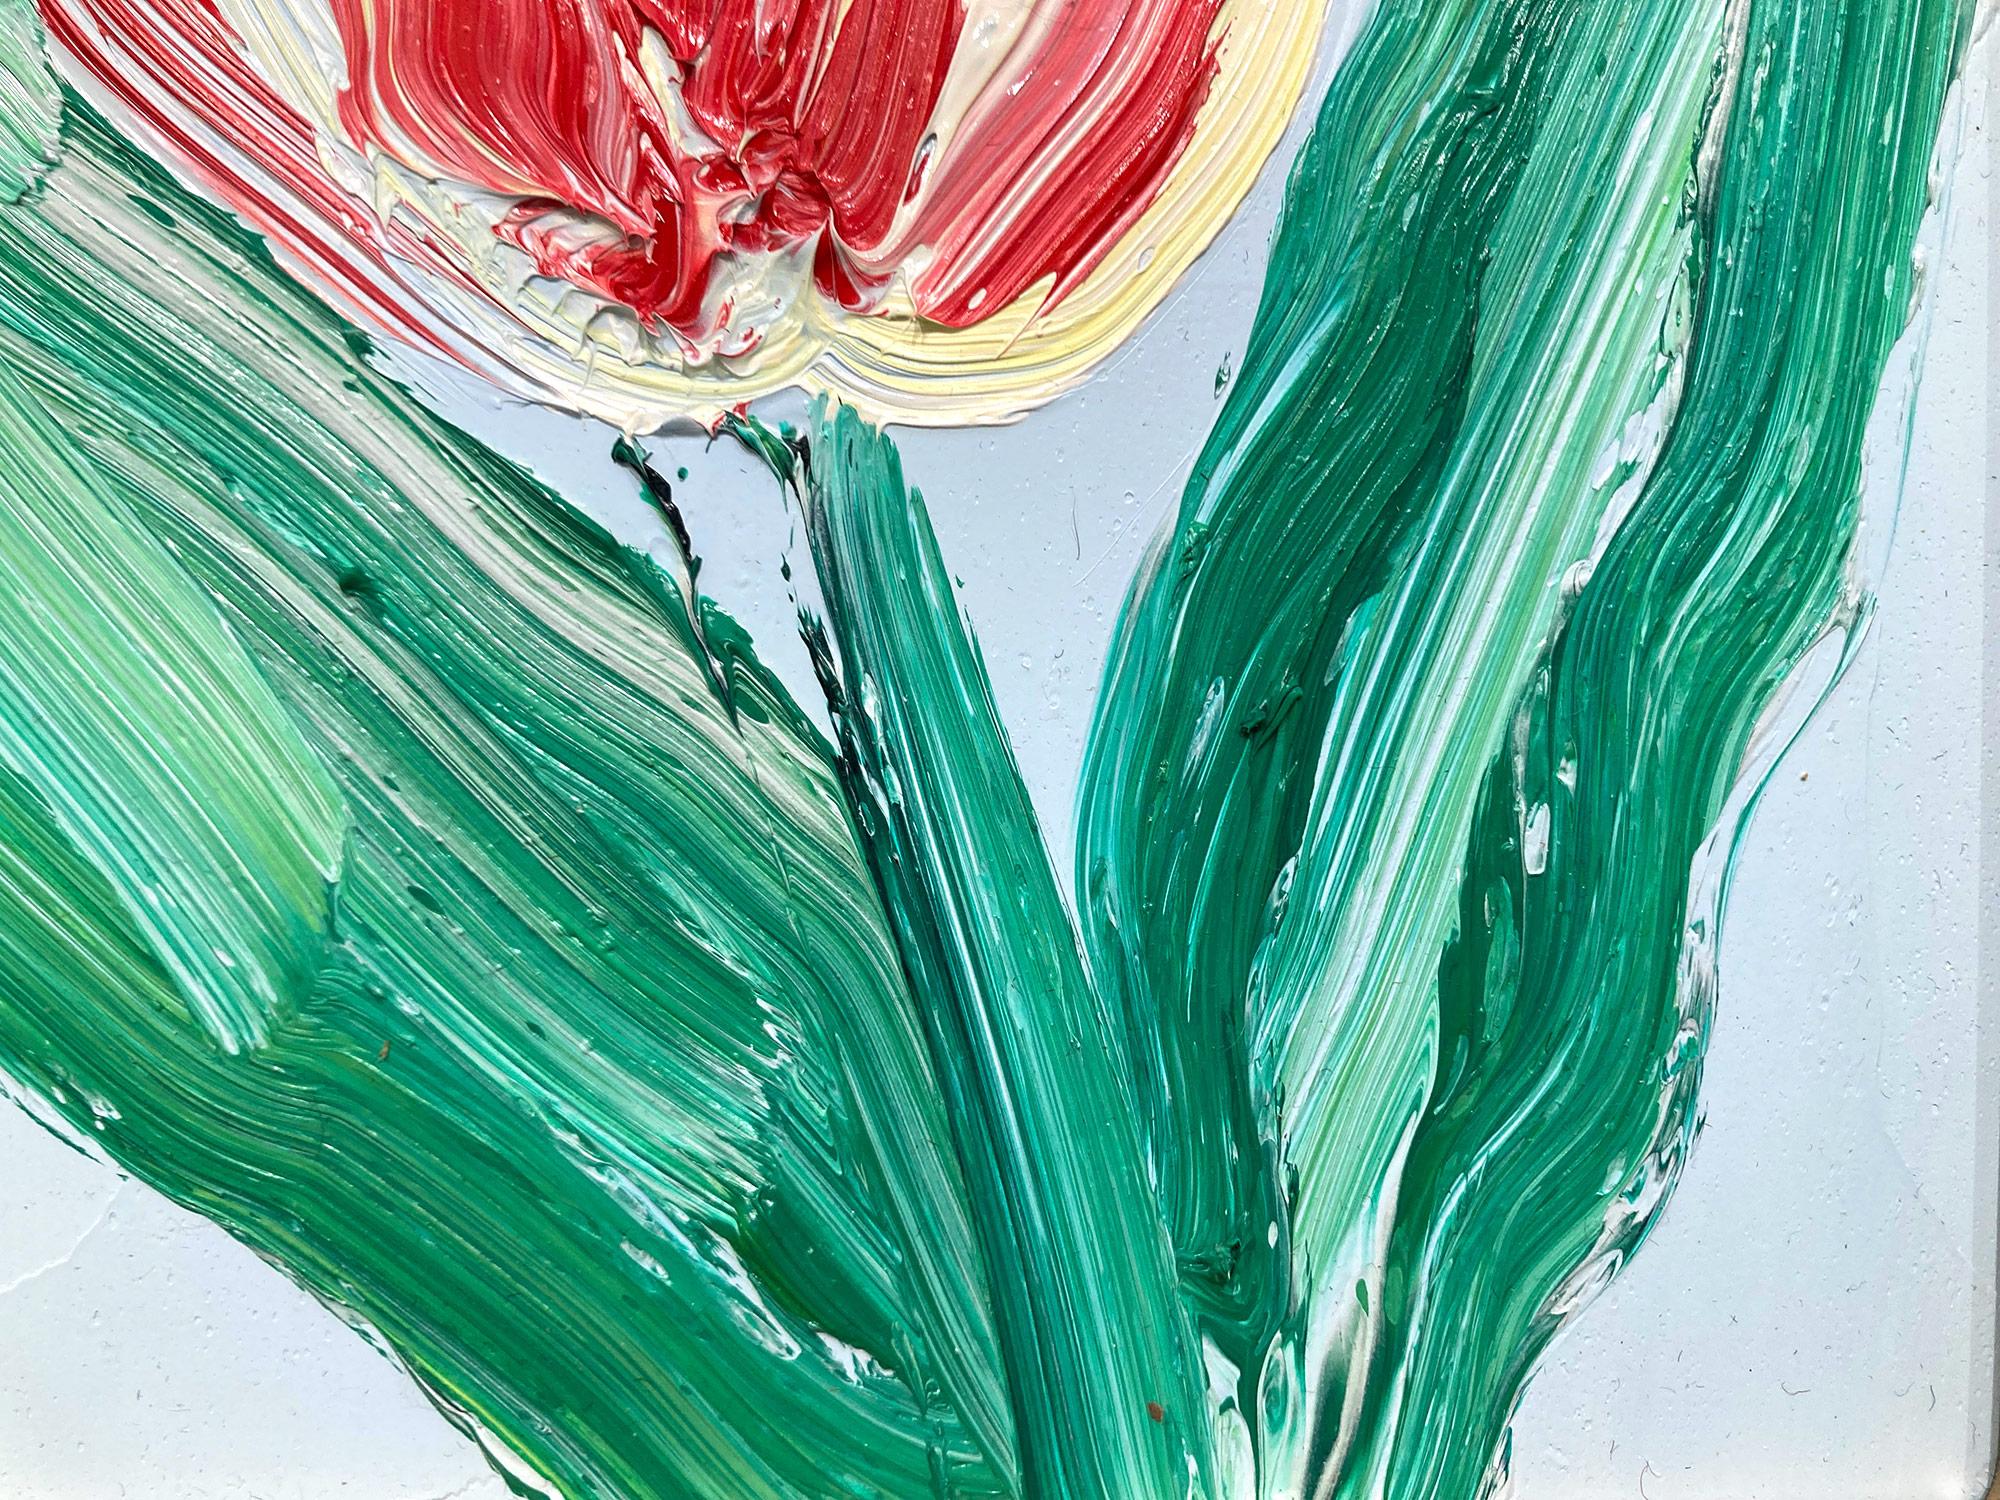 Une magnifique composition de l'une des plus récentes séries de Slonem, Tulipes. Cette œuvre représente la figure gestuelle d'une tulipe rouge et blanche sur un fond bleu ciel clair, avec une utilisation épaisse de la peinture. Inspirées par la